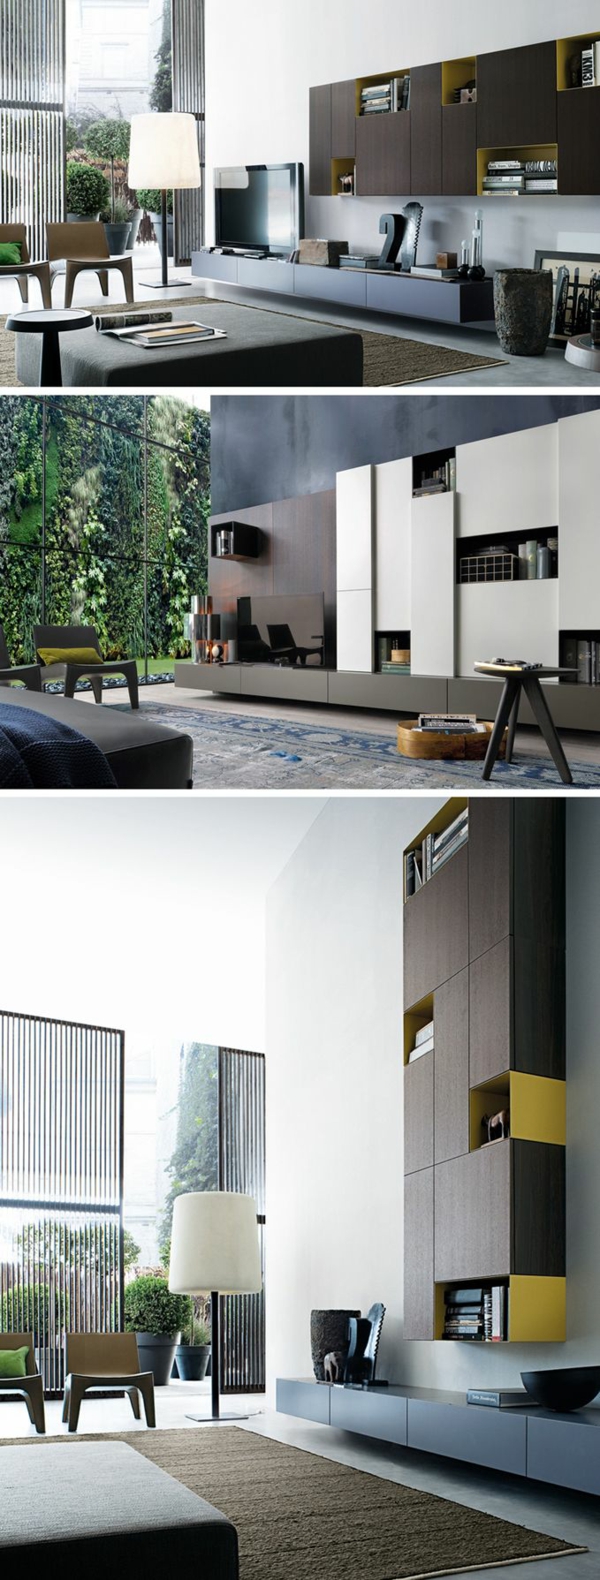 design outlet möbel designermöbel einrichtung wohnzimmer möbel